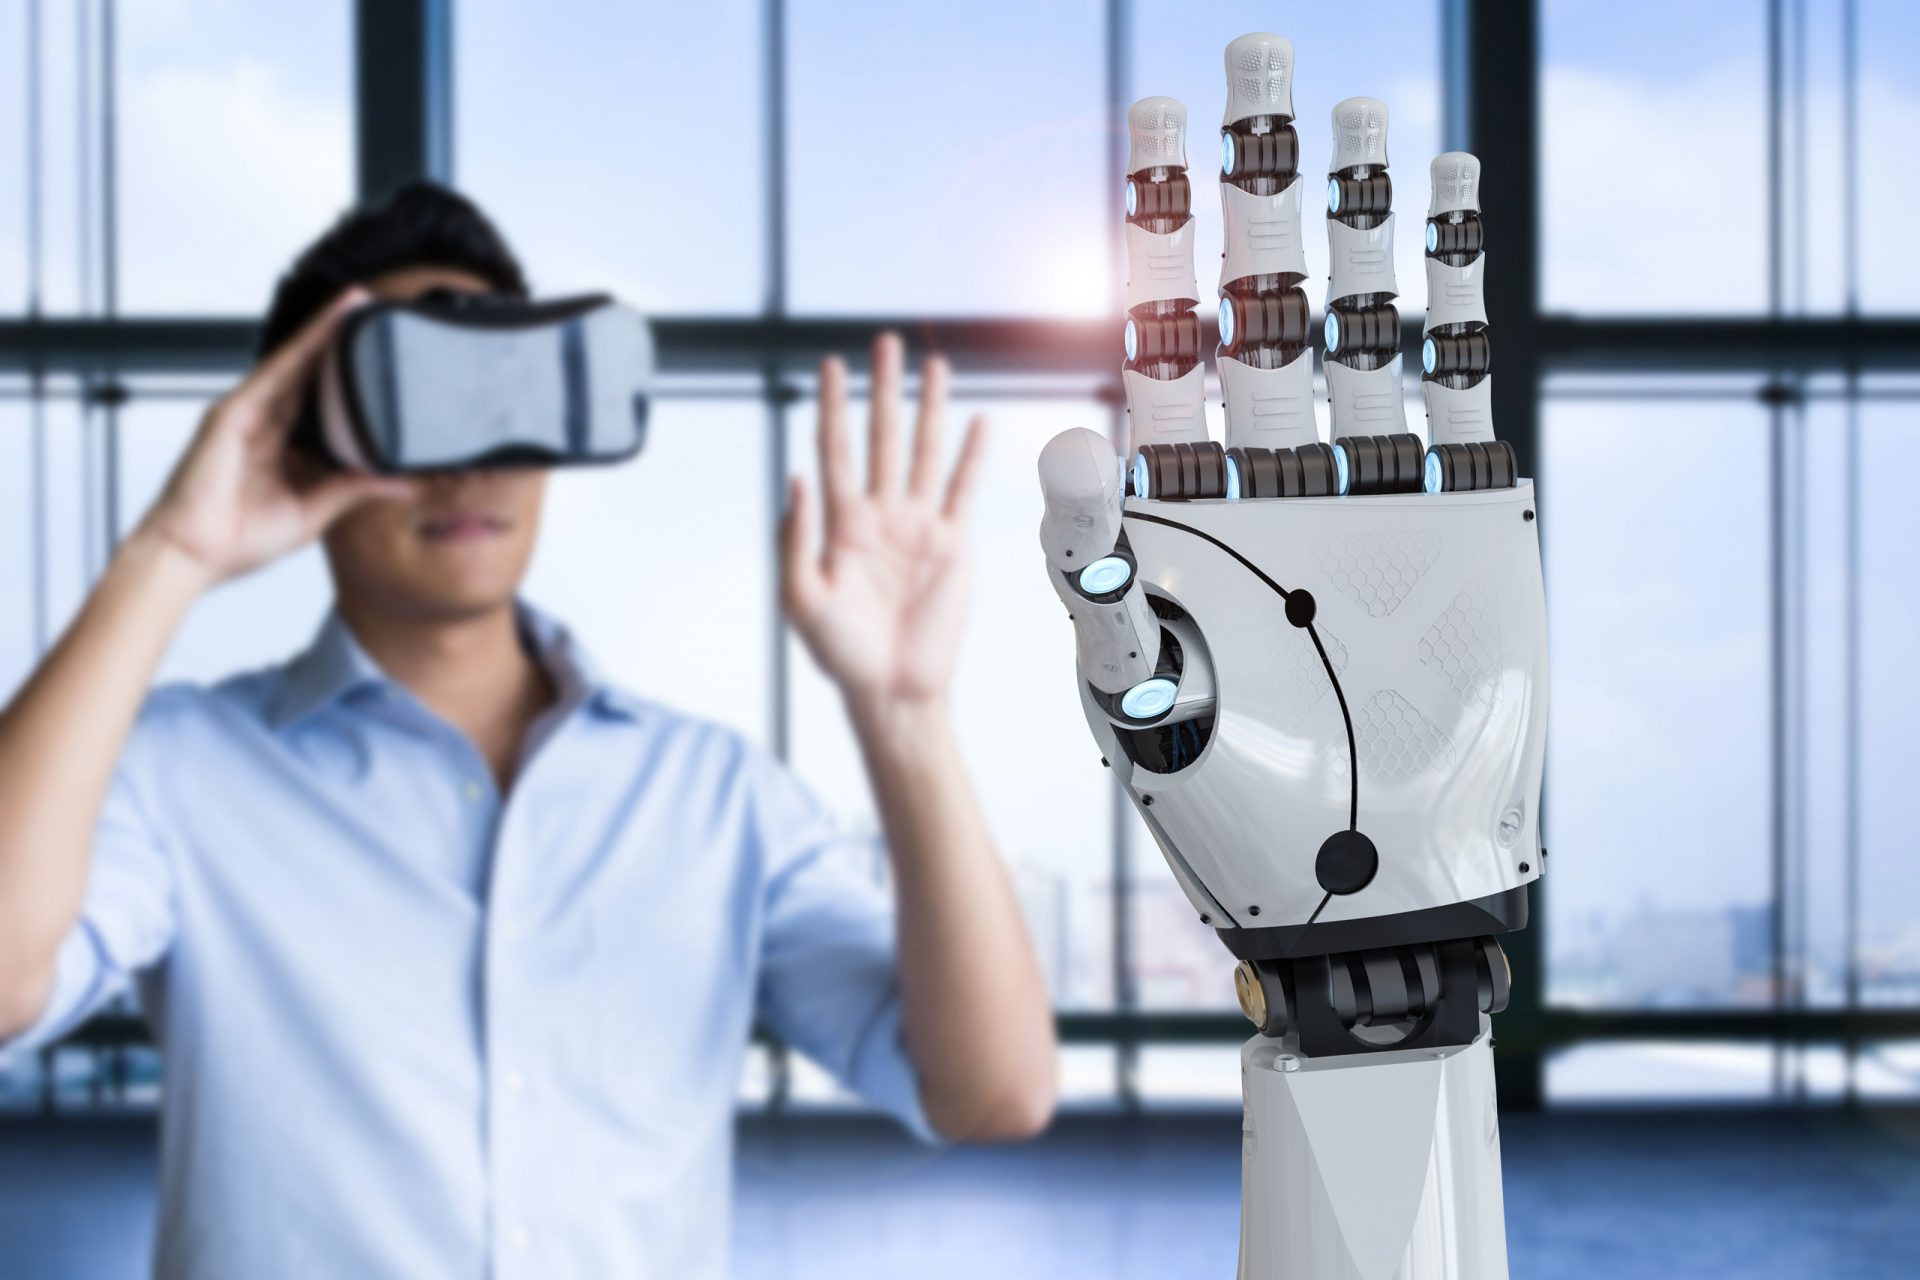 Der Mann im Hintergrund probiert eine VR-Brille aus. Die künstliche Hand des Roboters im Vordergrund wiederholt seine Bewegungen.